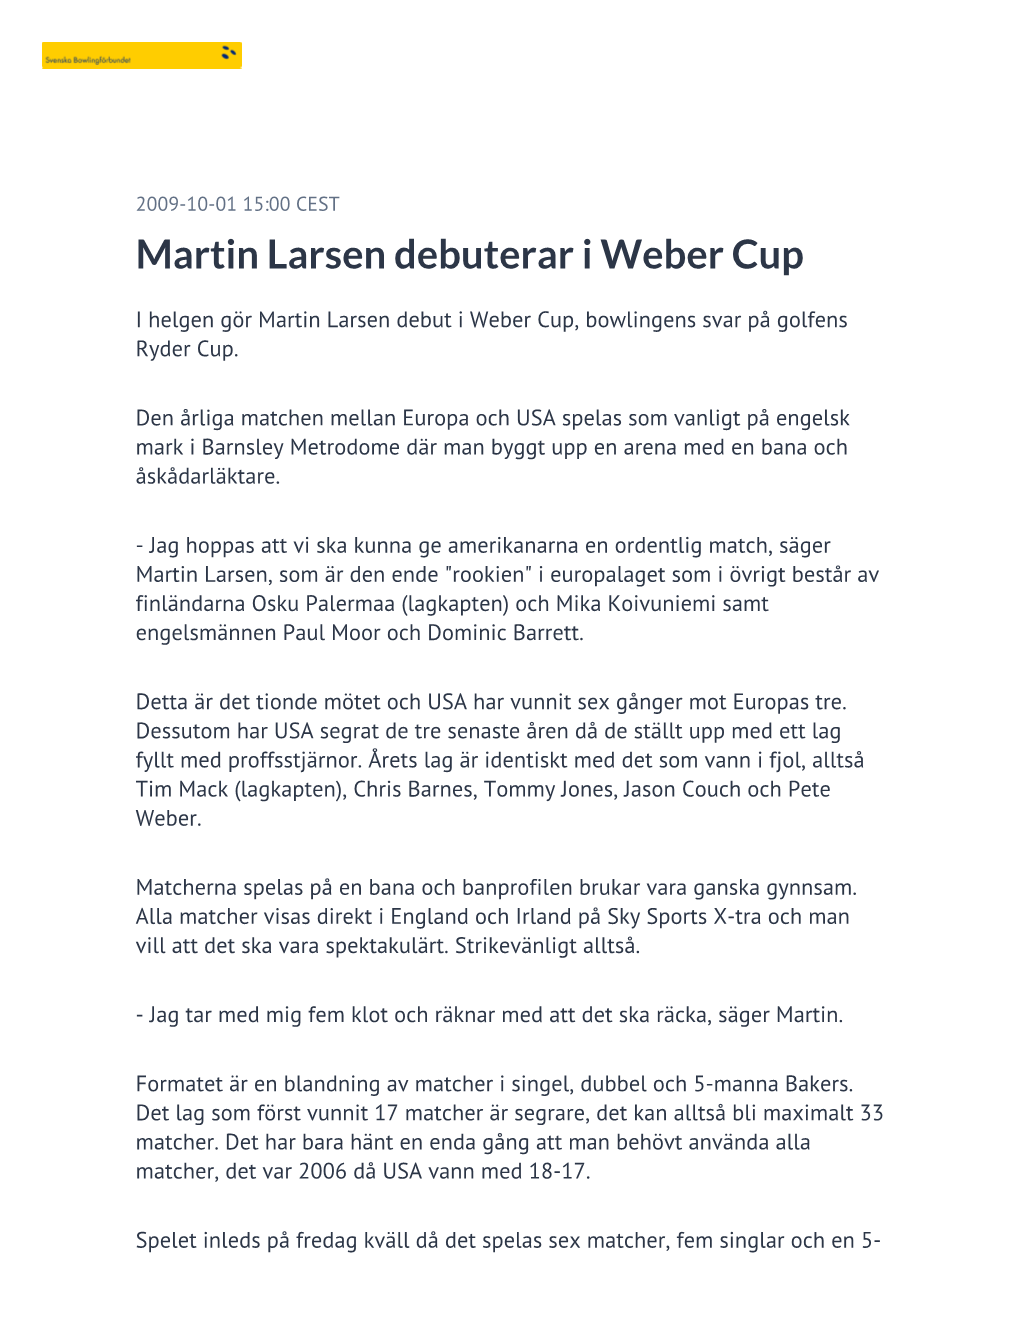 Martin Larsen Debuterar I Weber Cup